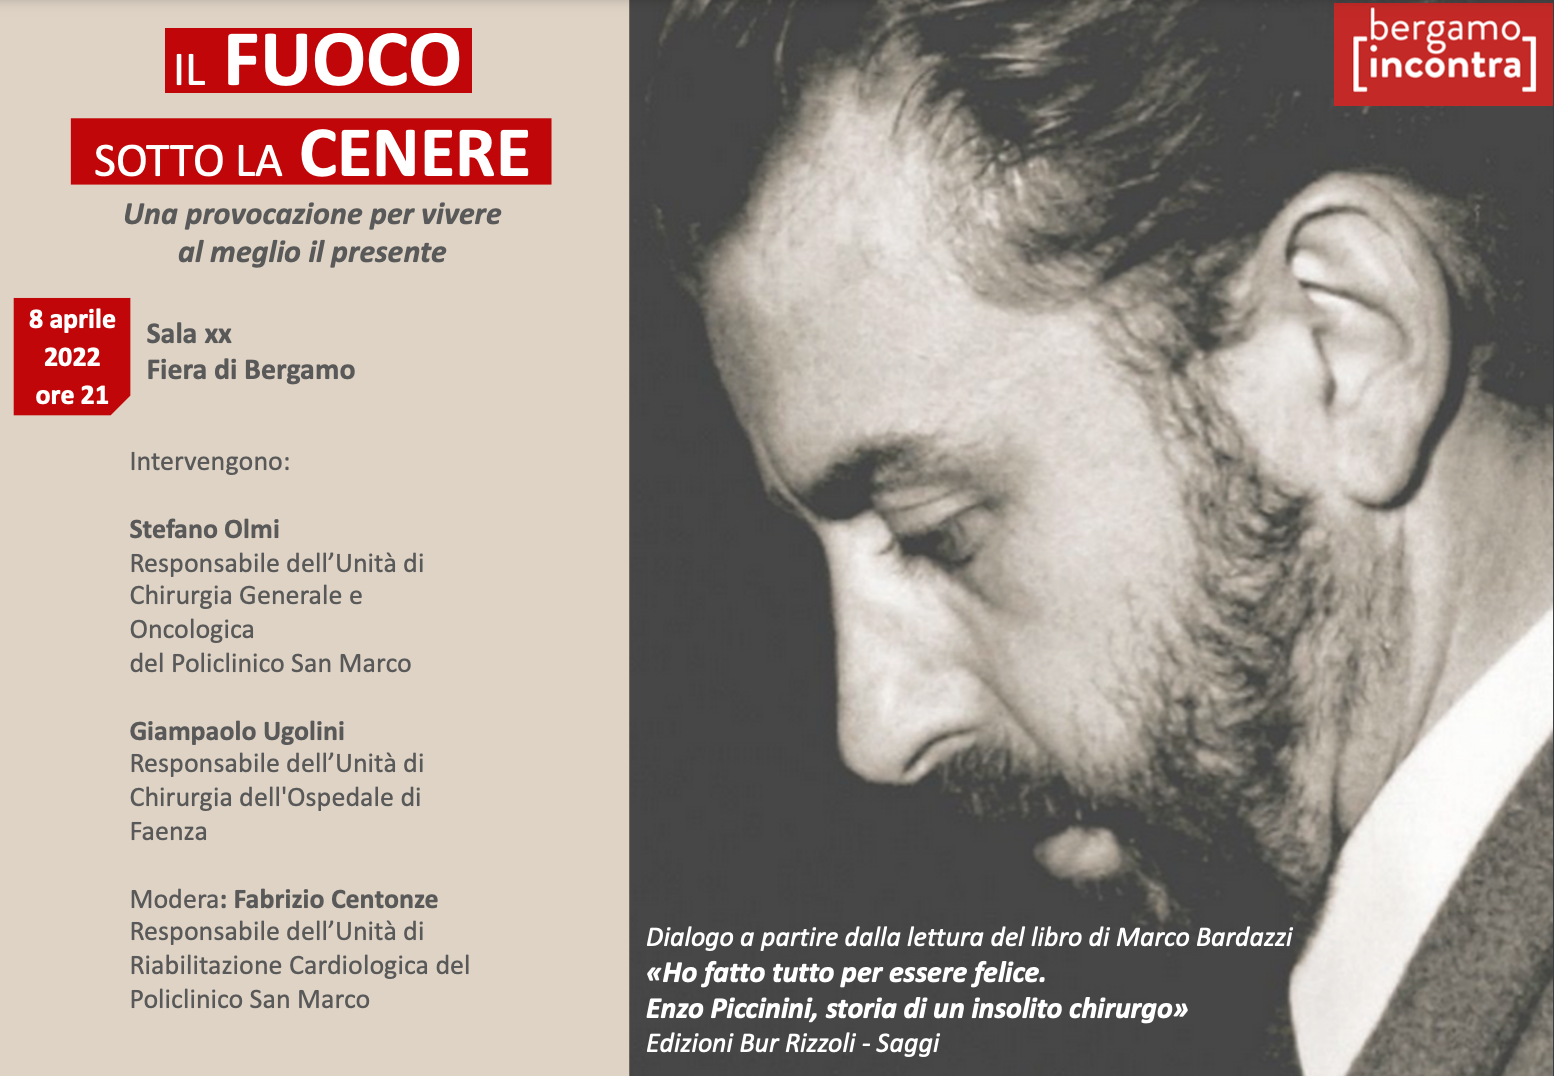 Featured image for “Bergamo: Il fuoco sotto la cenere”